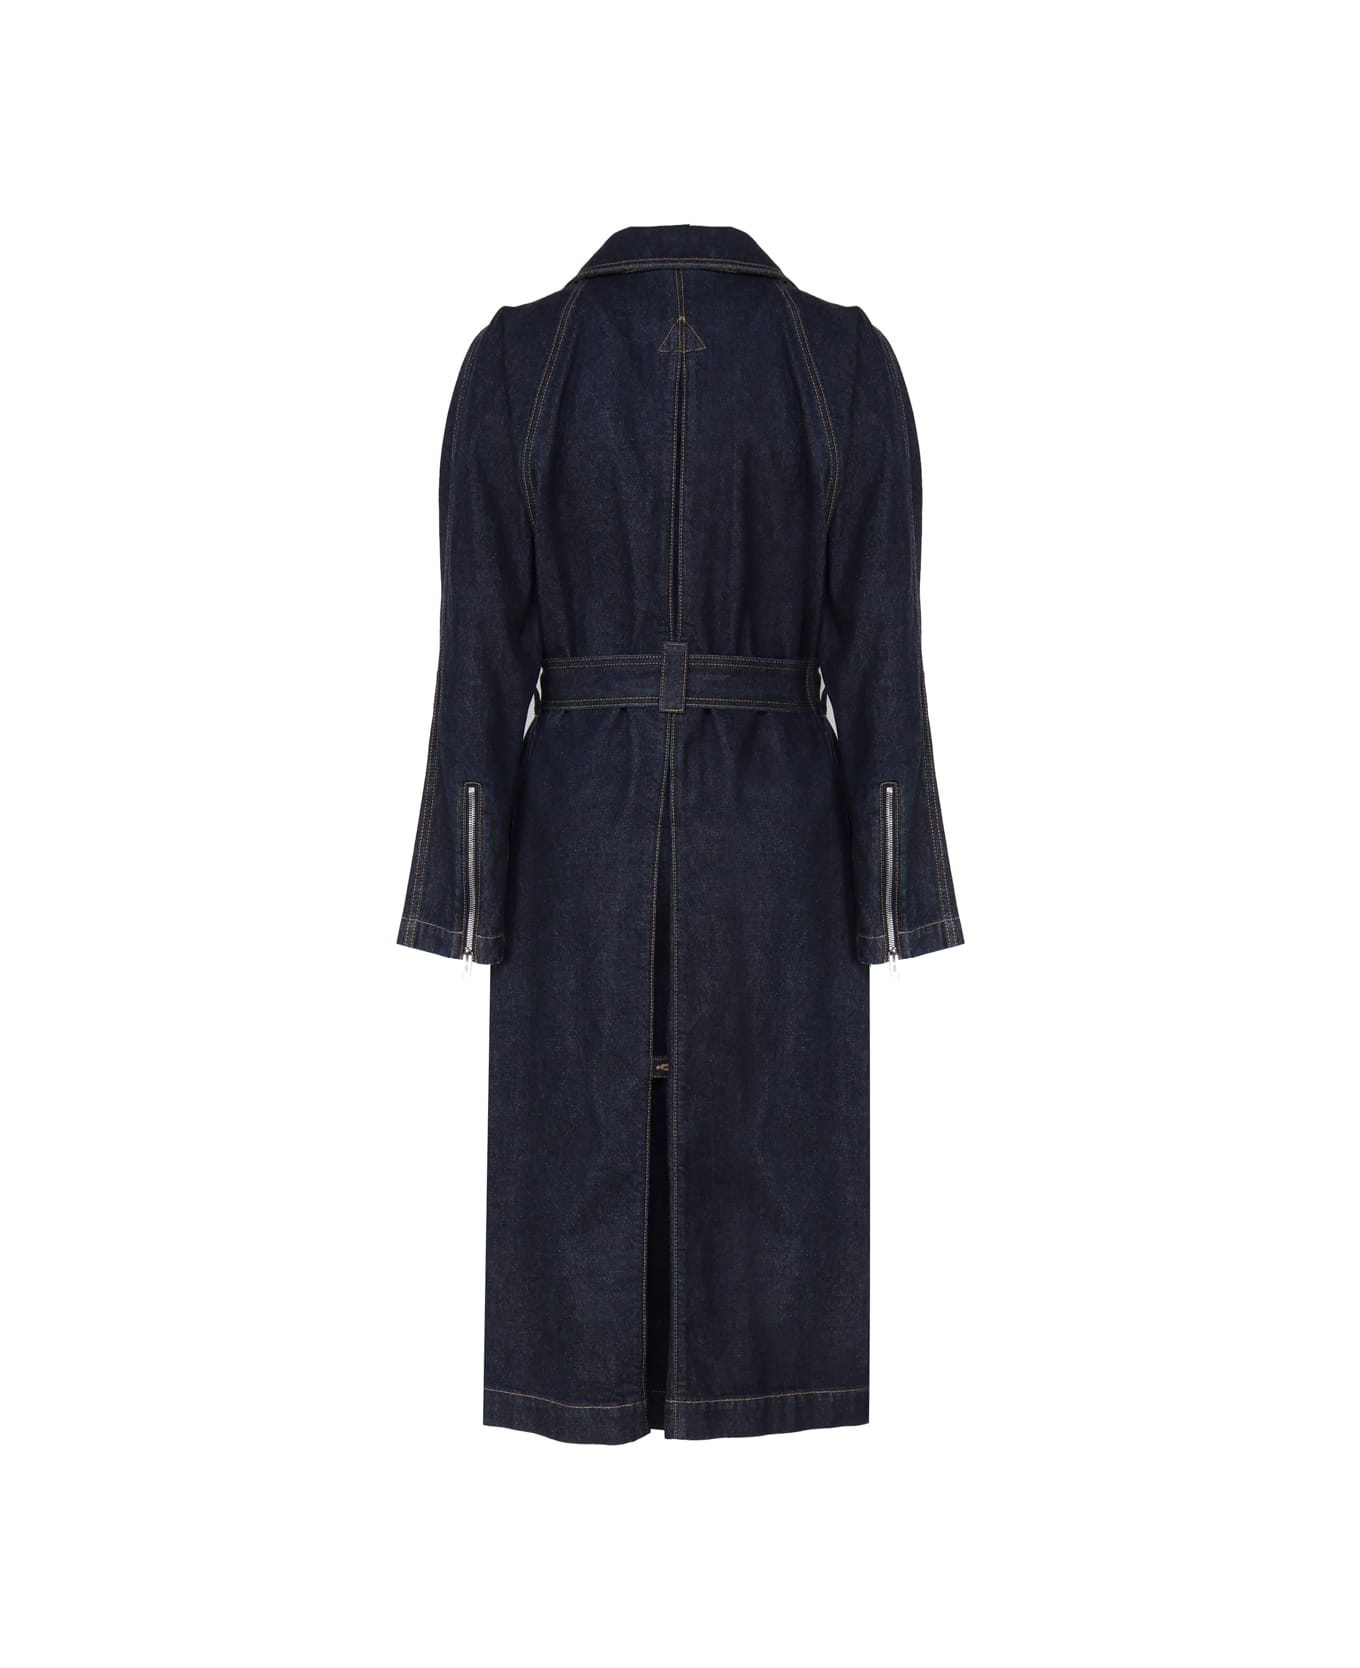 Alaia Classic Coat In Cotton Denim - Bleu denim コート